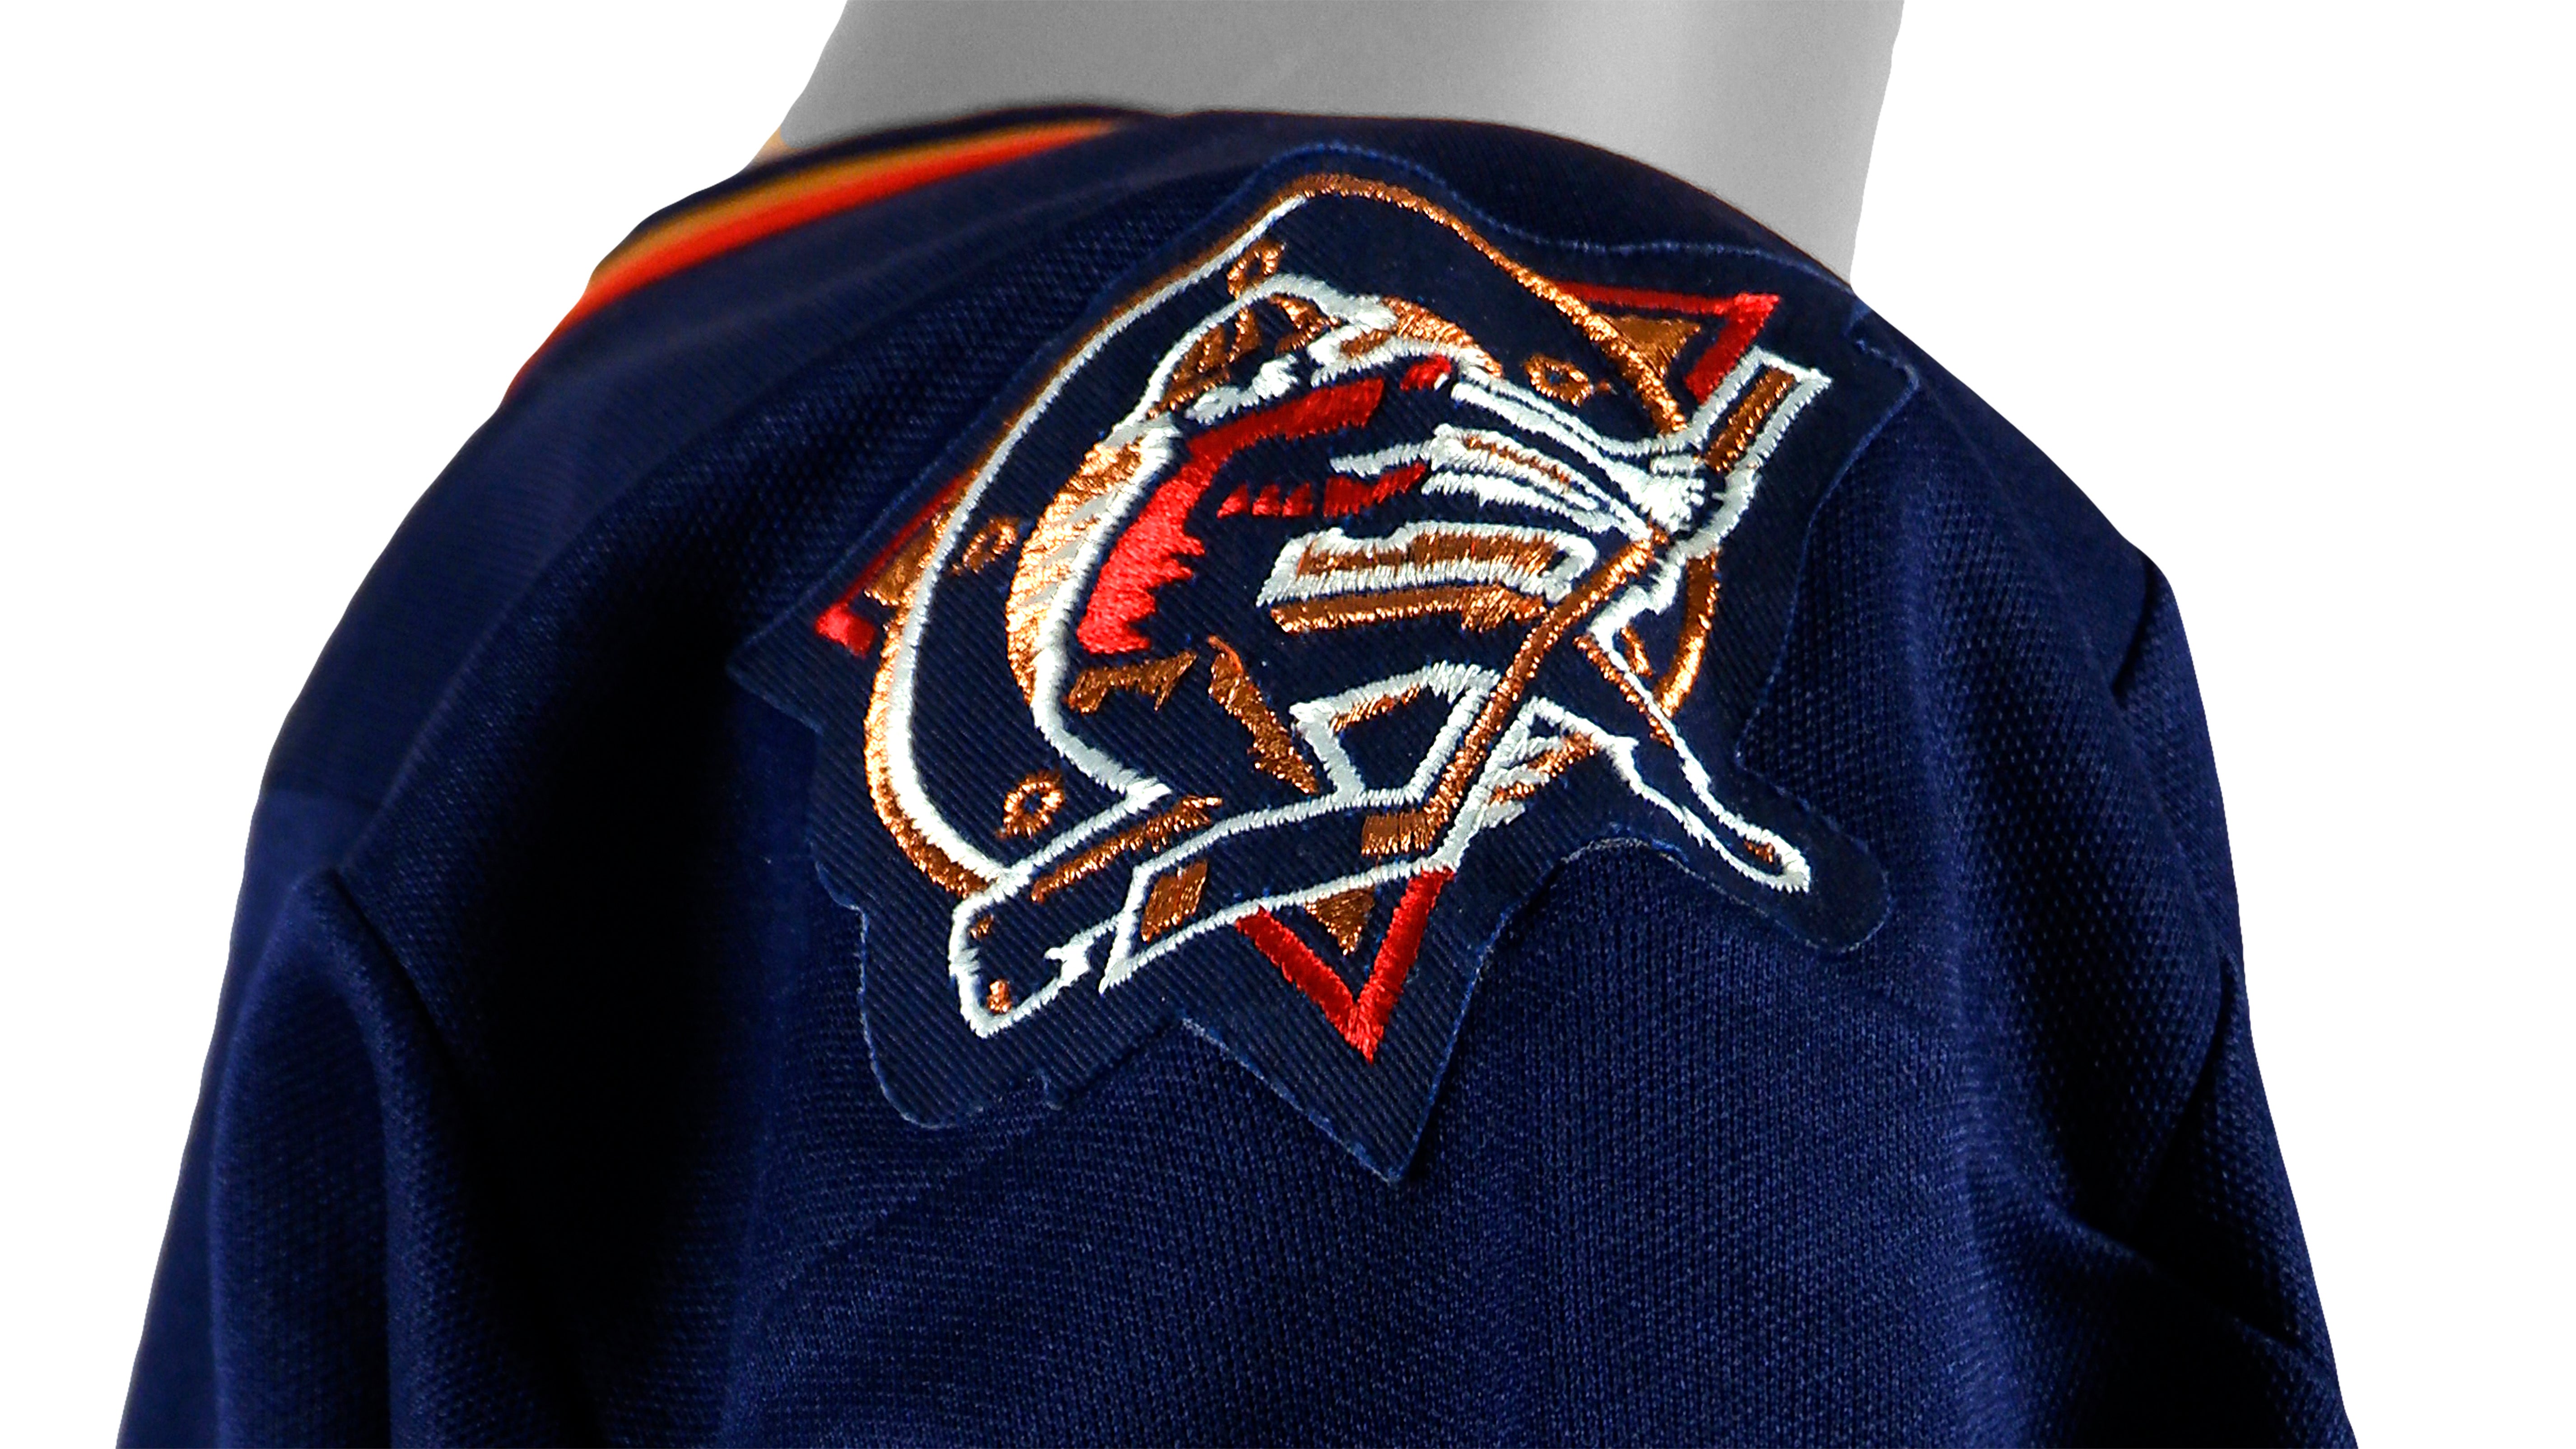 Edmonton Oilers Jerseys & Teamwear, NHL Merchandise